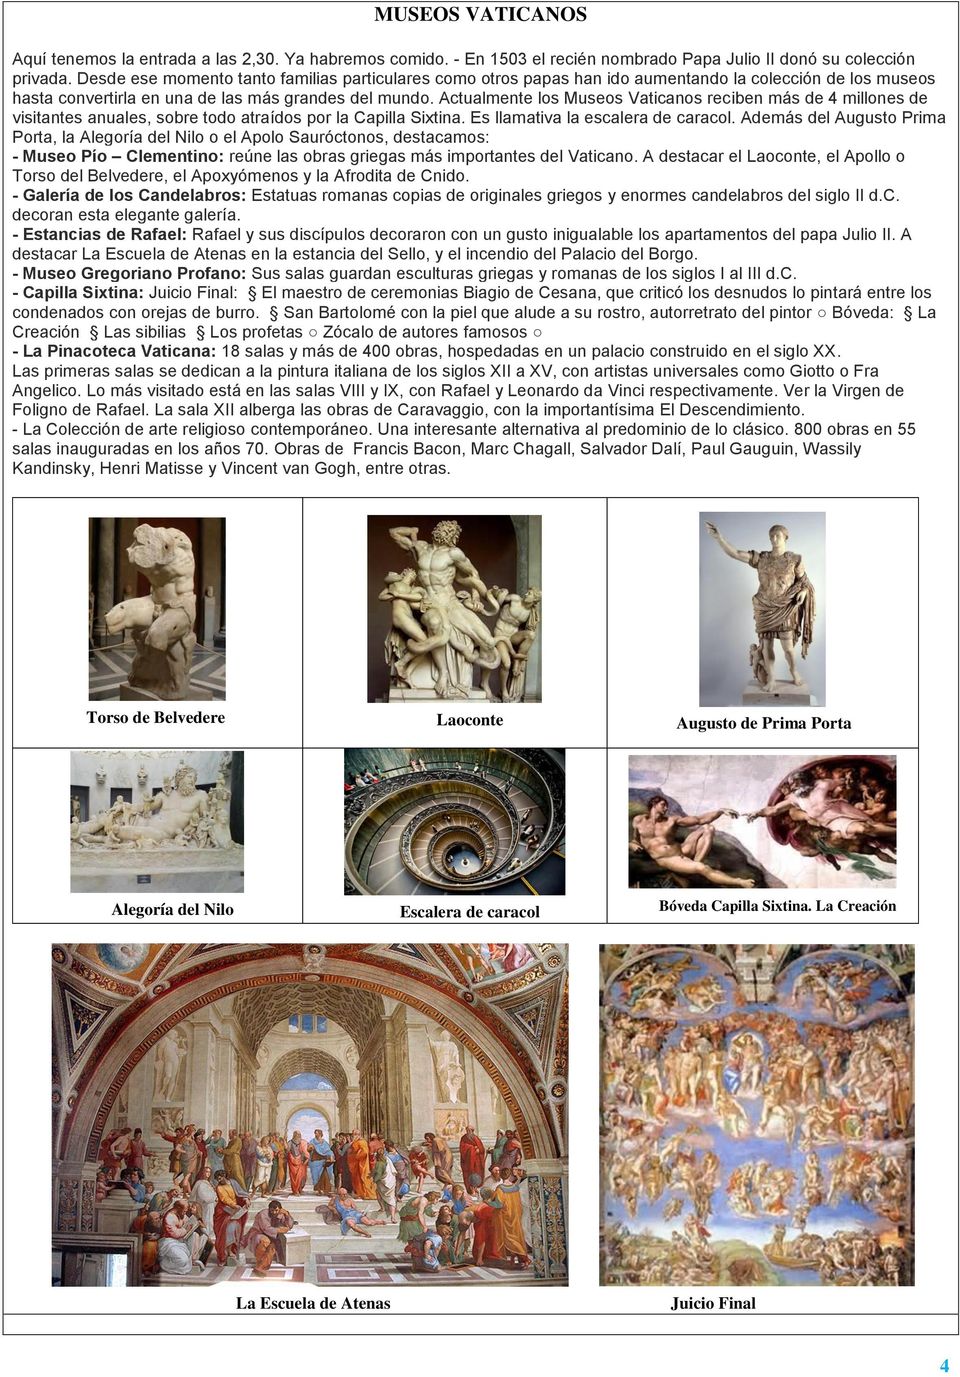 Actualmente los Museos Vaticanos reciben más de 4 millones de visitantes anuales, sobre todo atraídos por la Capilla Sixtina. Es llamativa la escalera de caracol.